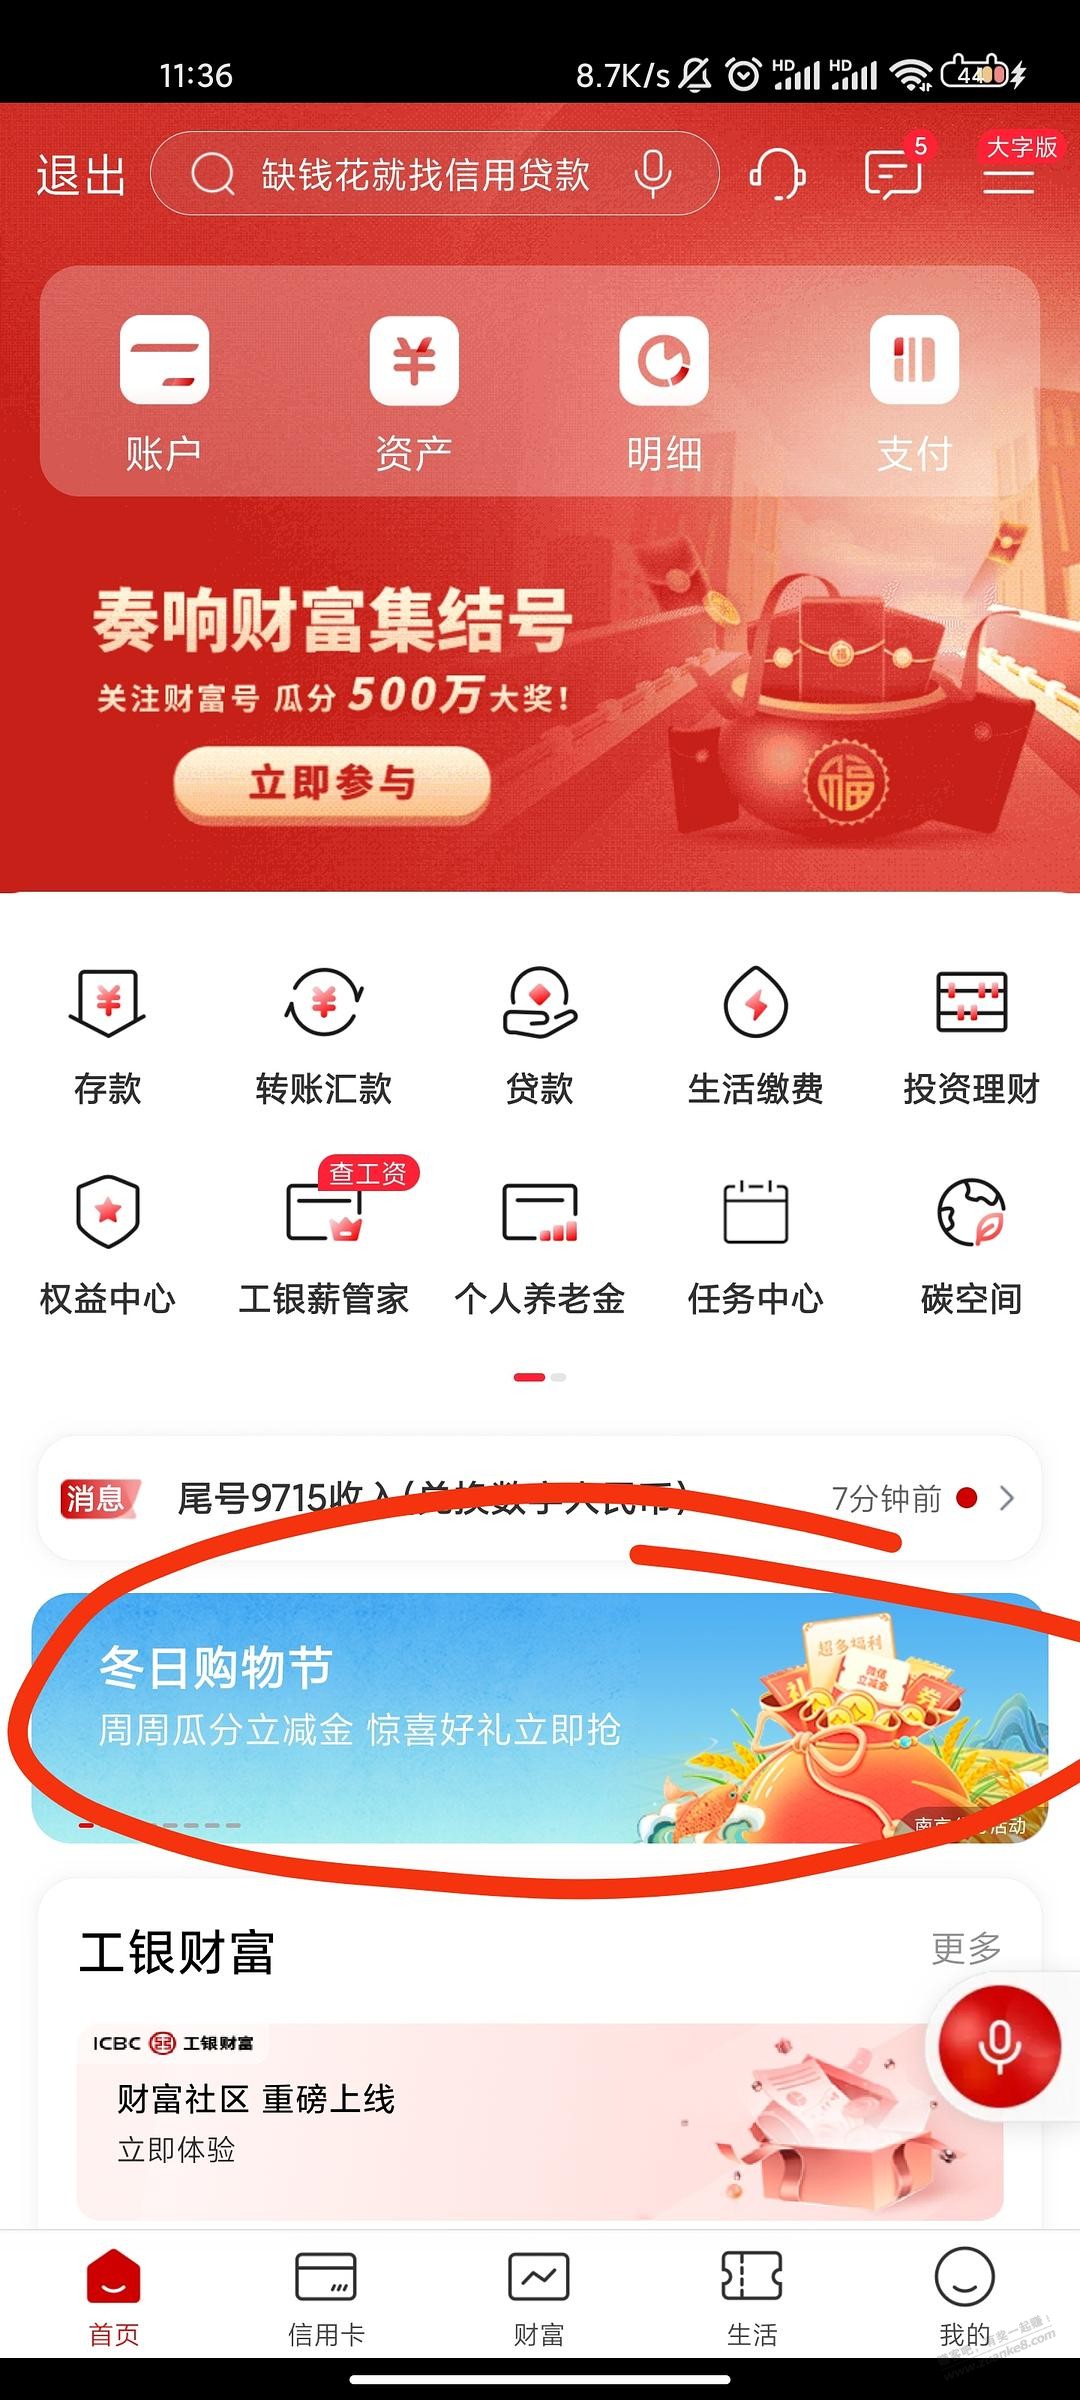 江苏工行数字人民币用户30充50话费-惠小助(52huixz.com)